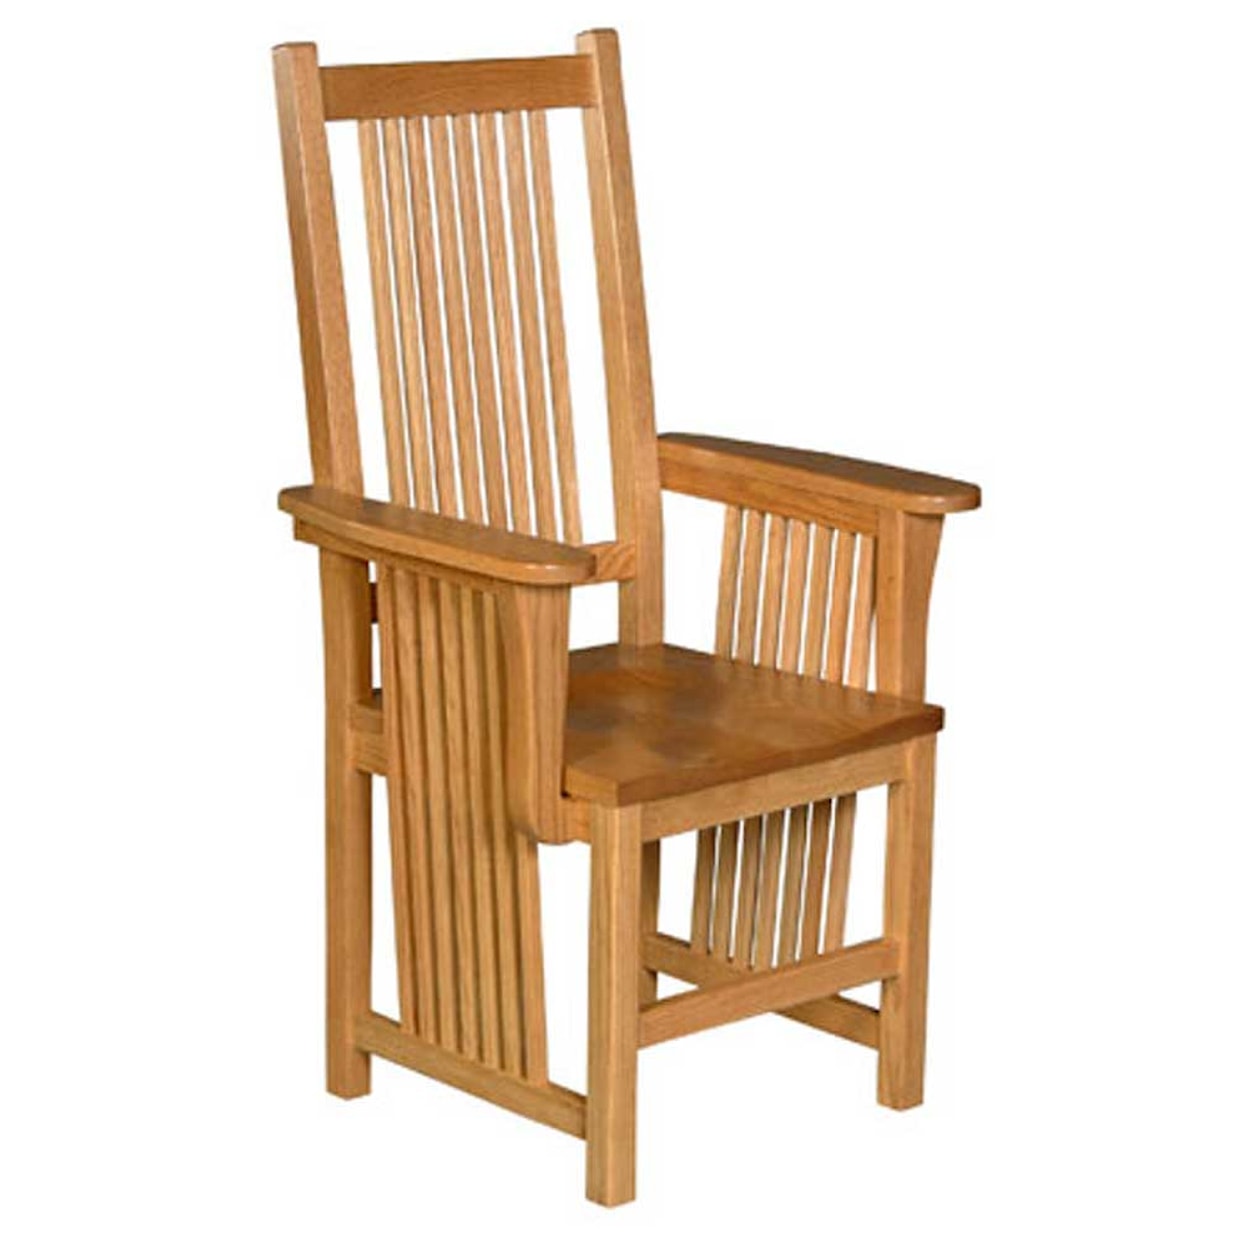 Simply Amish Prairie Mission Arm Chair